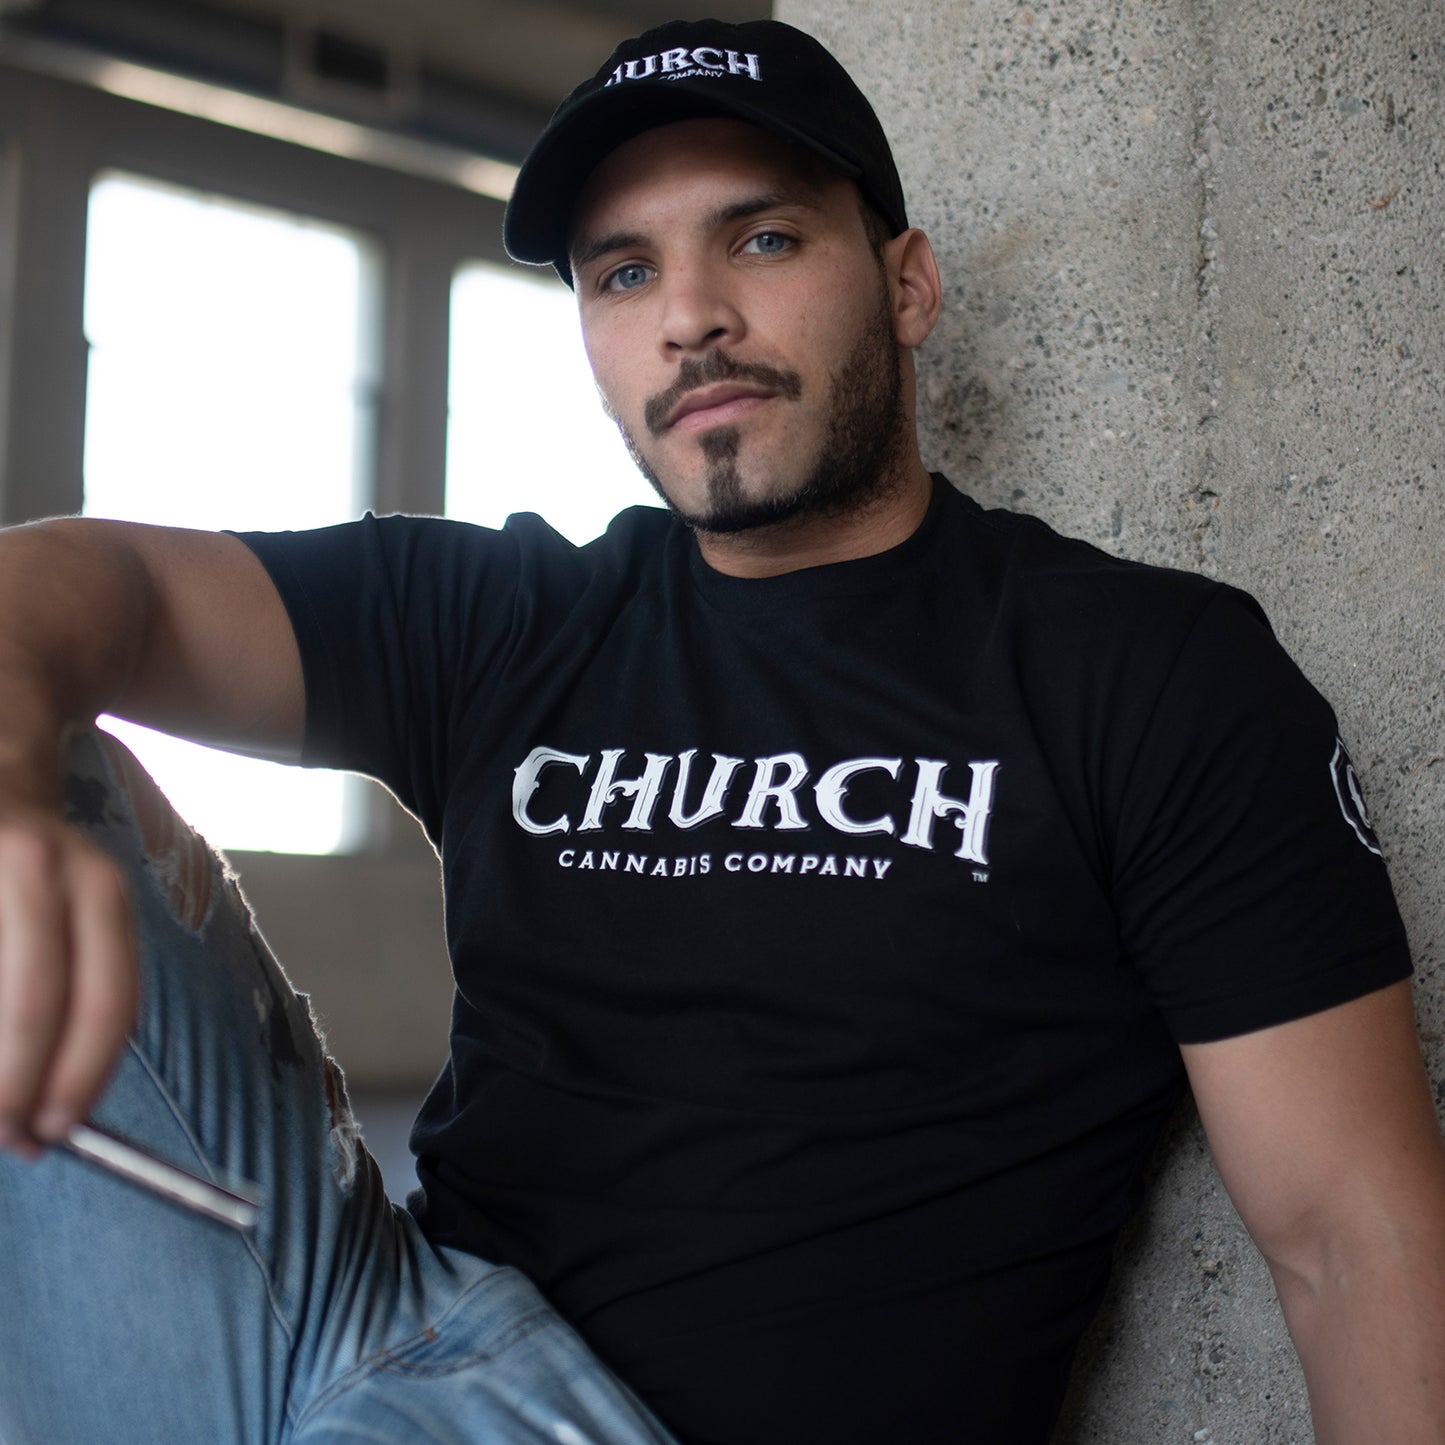 Church Men's Rocker T-Shirt